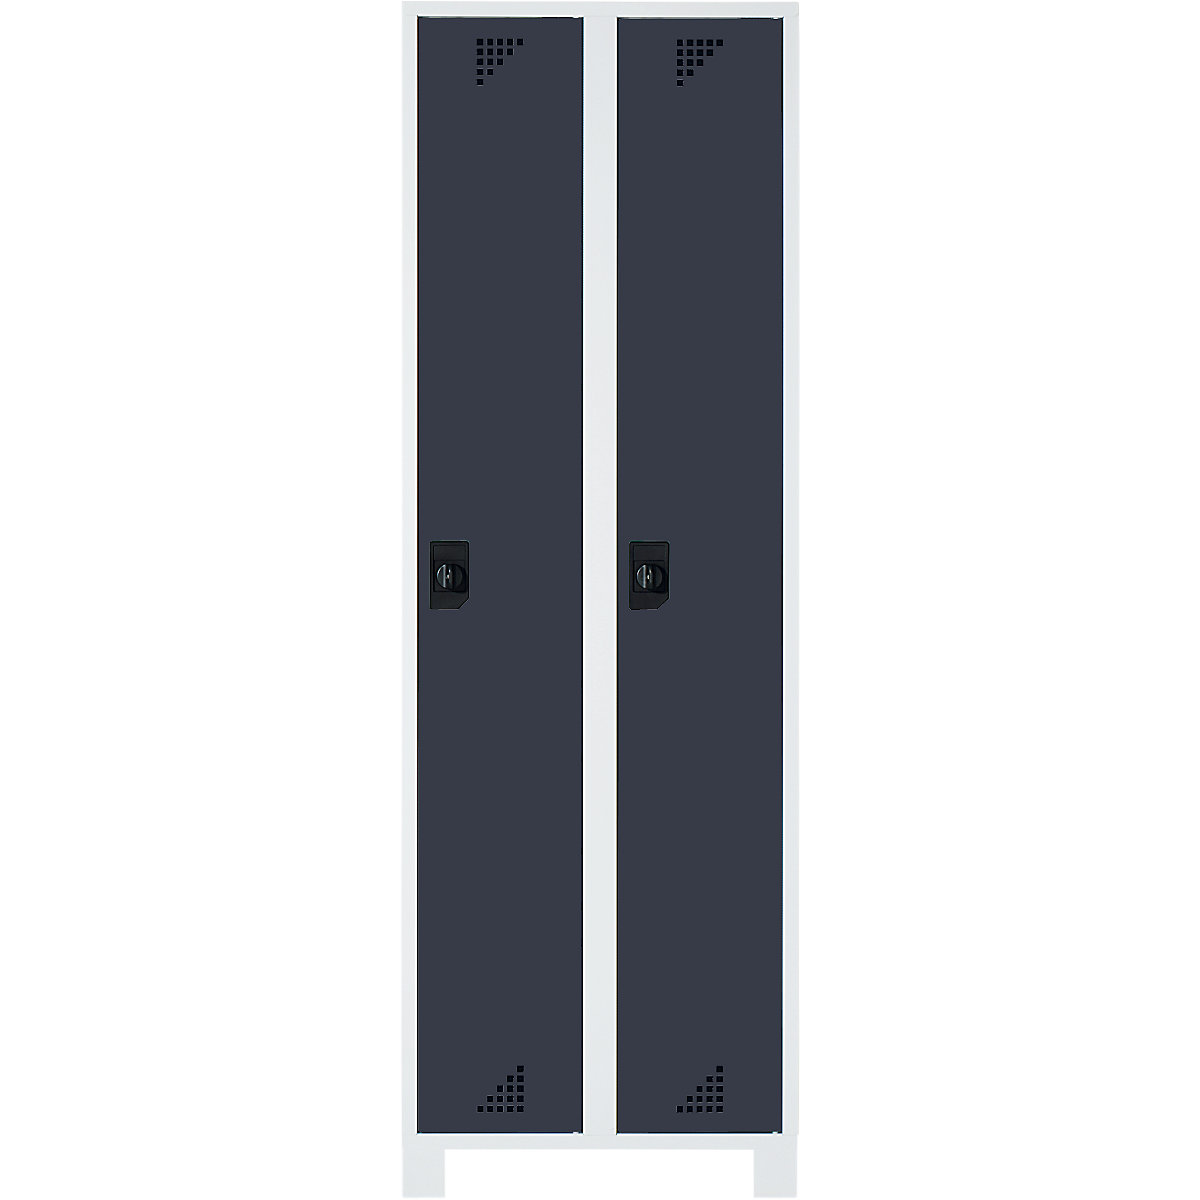 EUROKRAFTpro – Vestiaire et armoire multi-usage, hauteur compartiments 1695 mm, 2 compartiments, largeur 800 mm, corps gris clair, portes anthracite